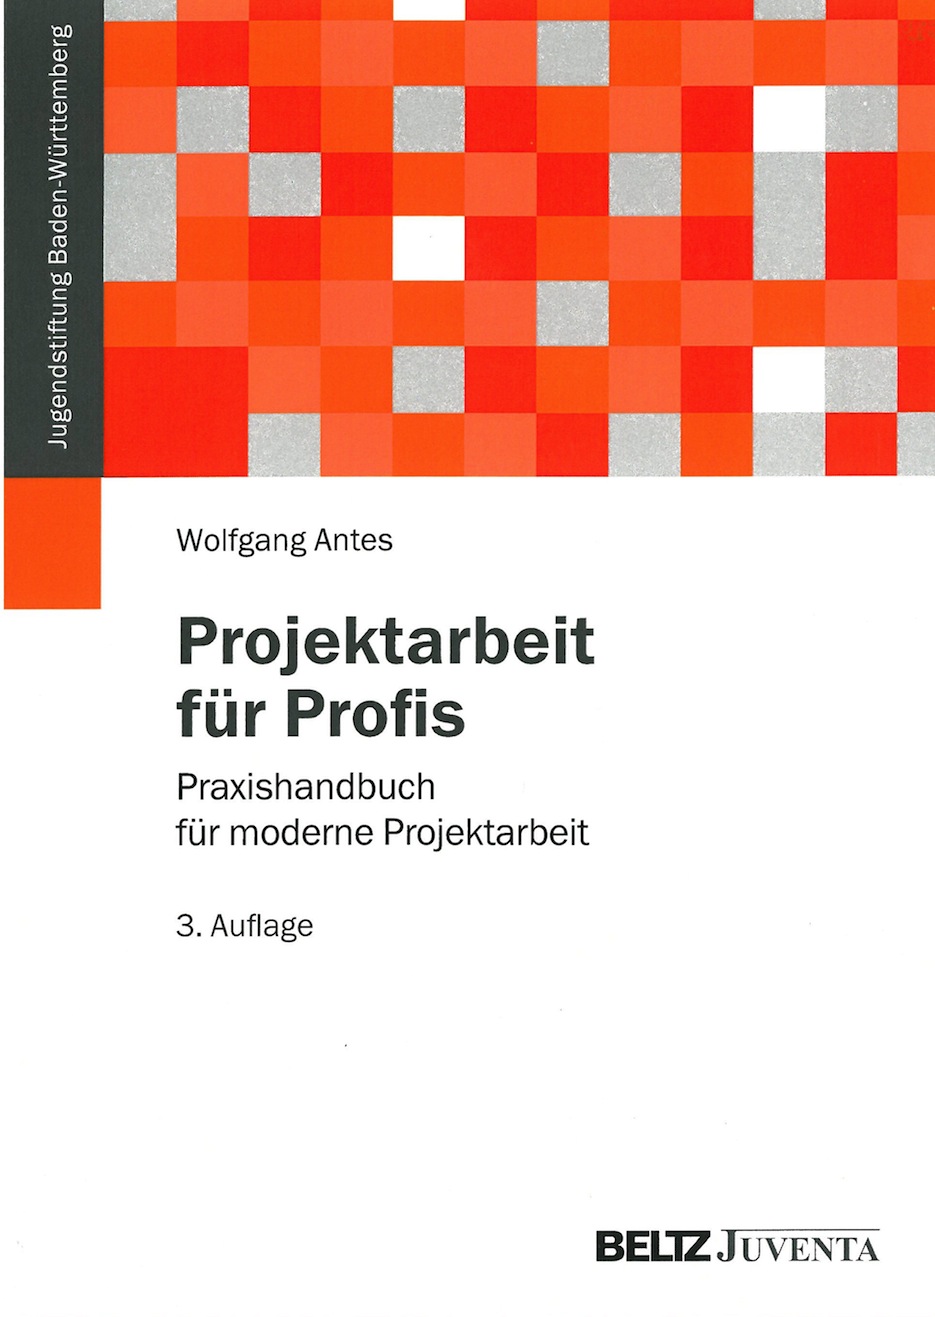 Projektarbeit für Profis - Praxishandbuch für moderne Projektarbeit